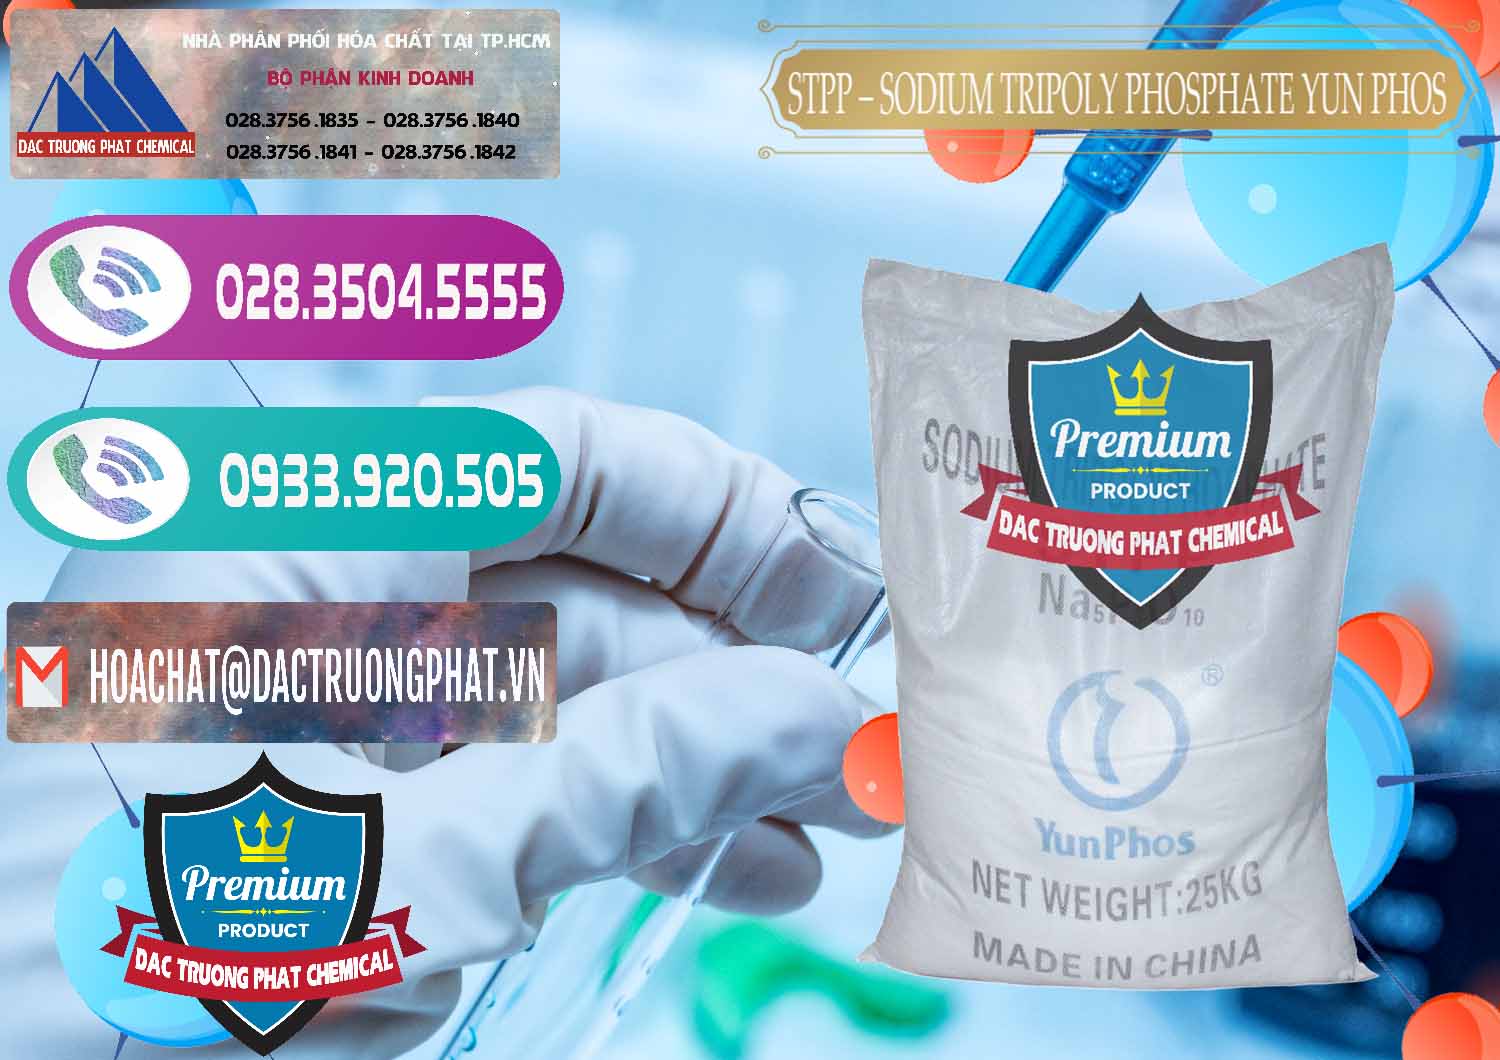 Cty nhập khẩu ( bán ) Sodium Tripoly Phosphate - STPP Yun Phos Trung Quốc China - 0153 - Nhà cung cấp và bán hóa chất tại TP.HCM - hoachatxulynuoc.com